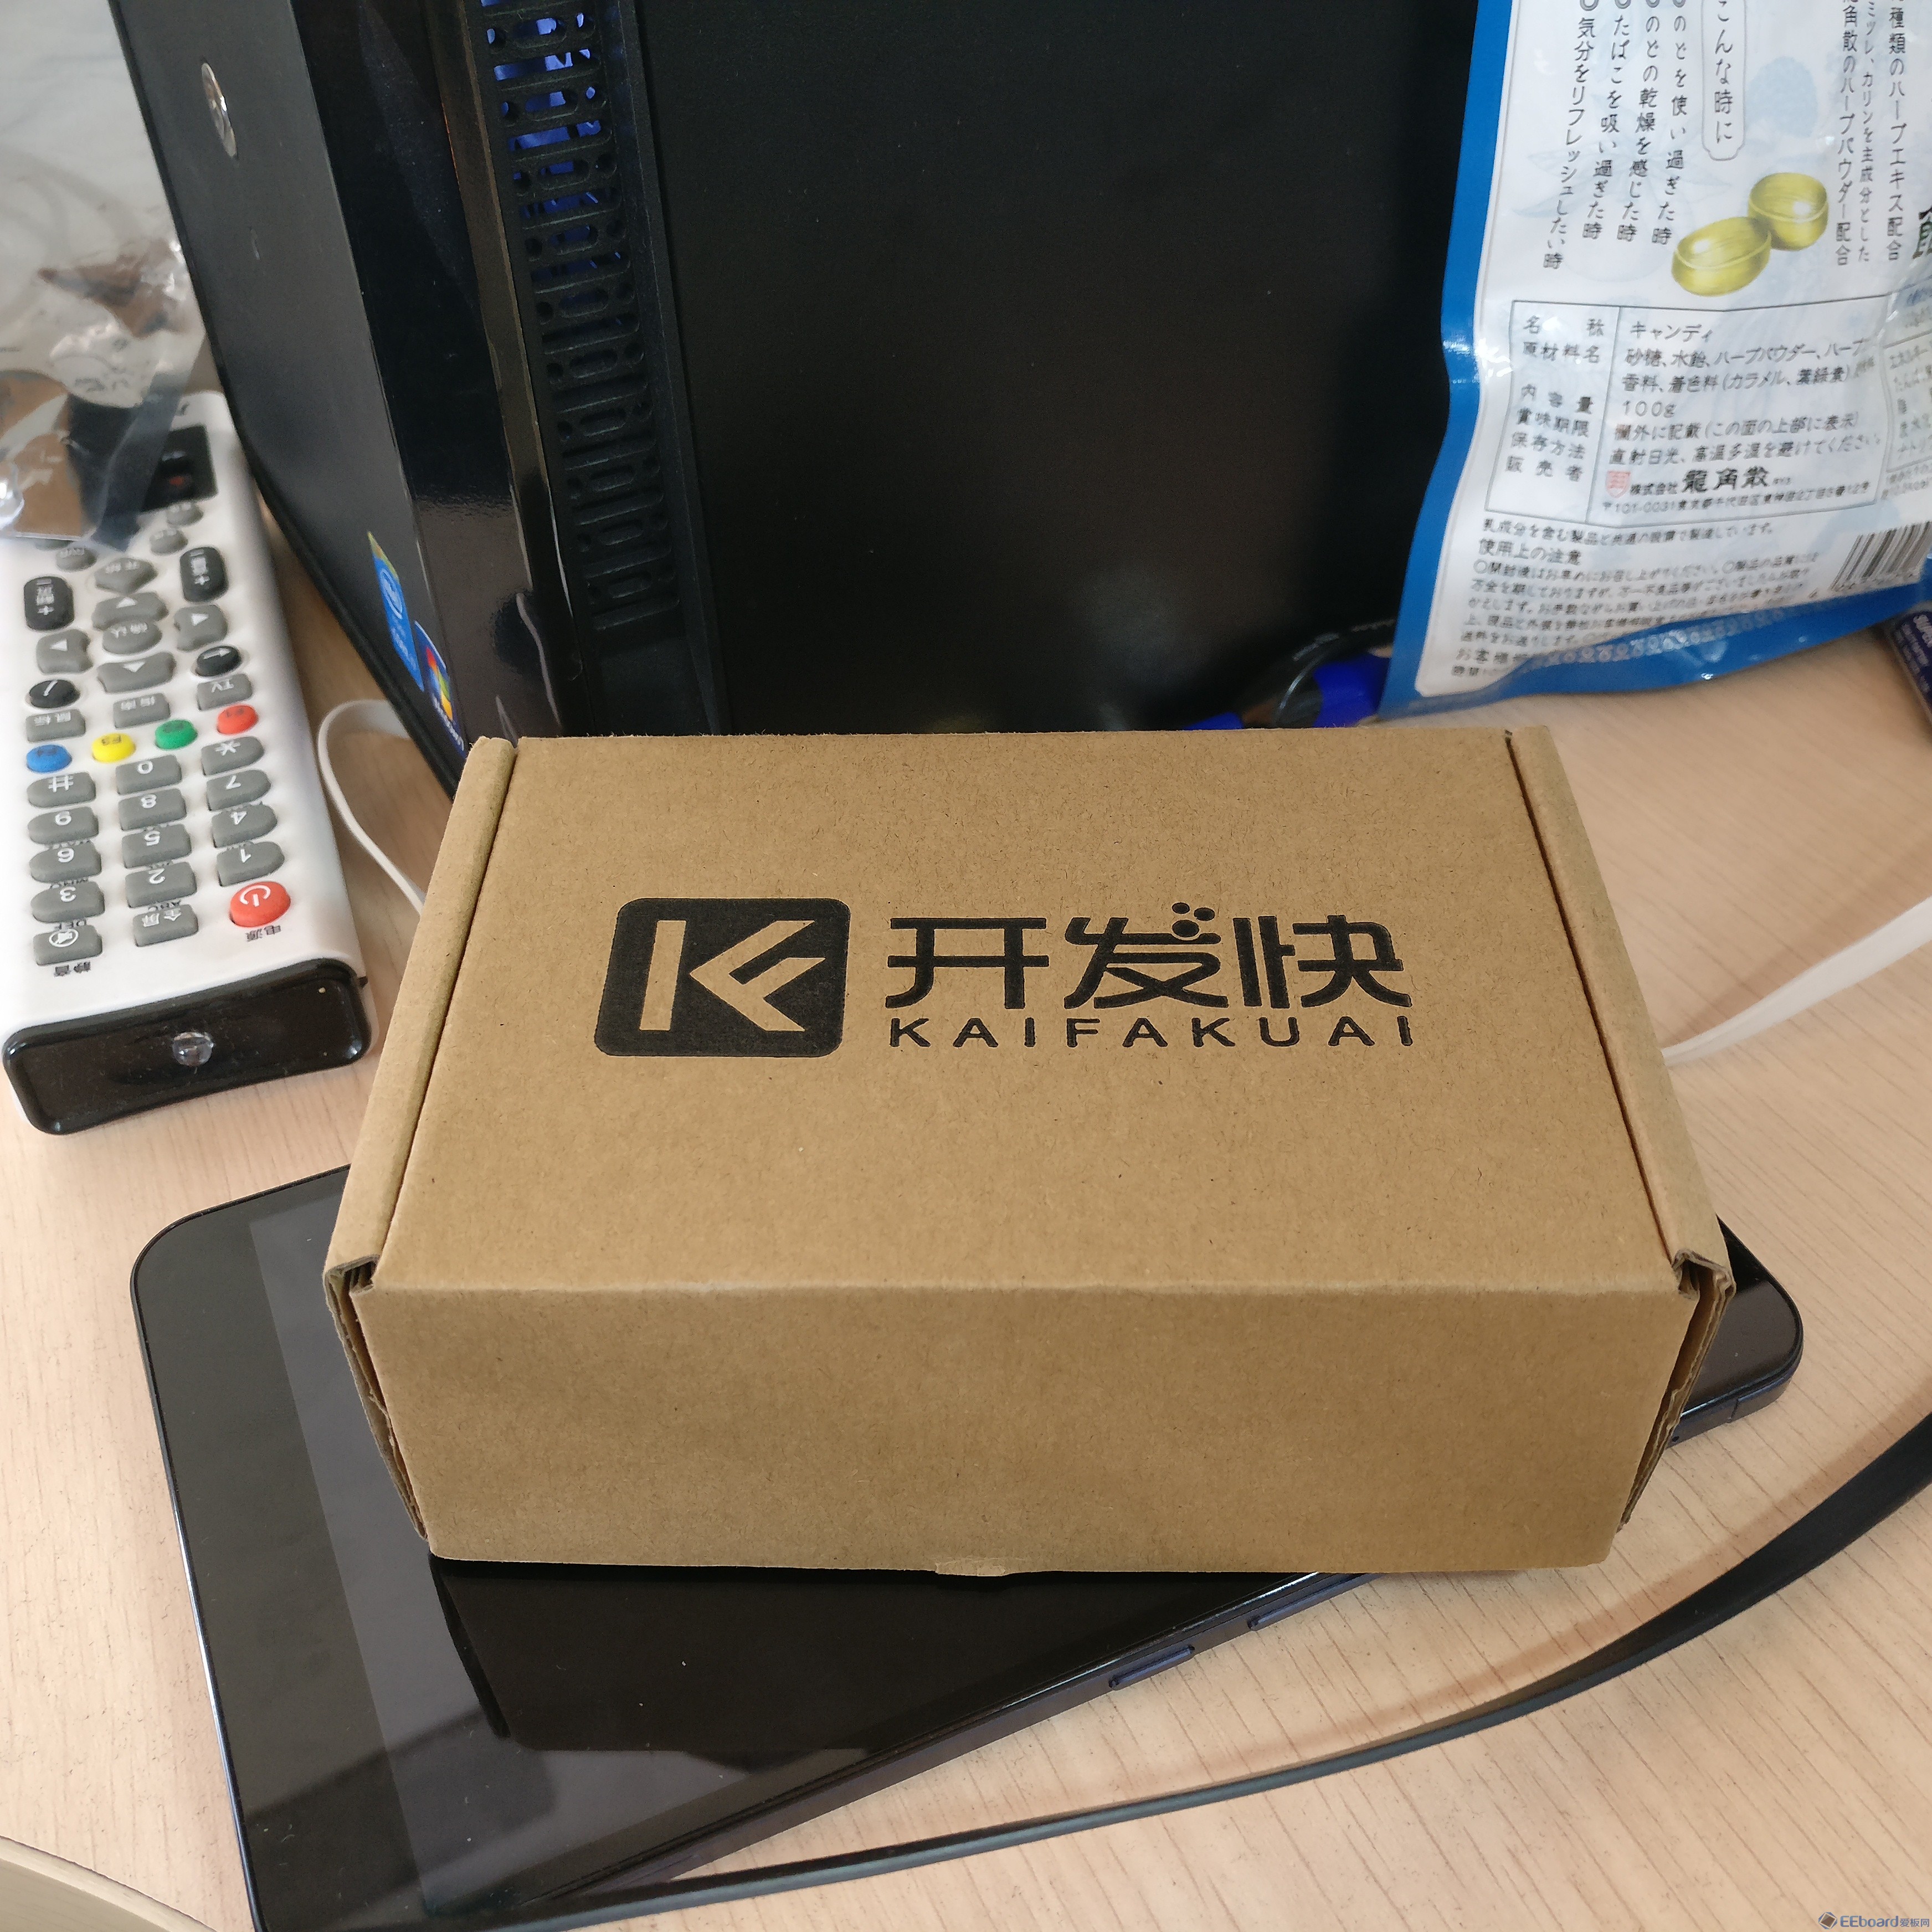 xiaoe2-open-box-20161125111409.jpg